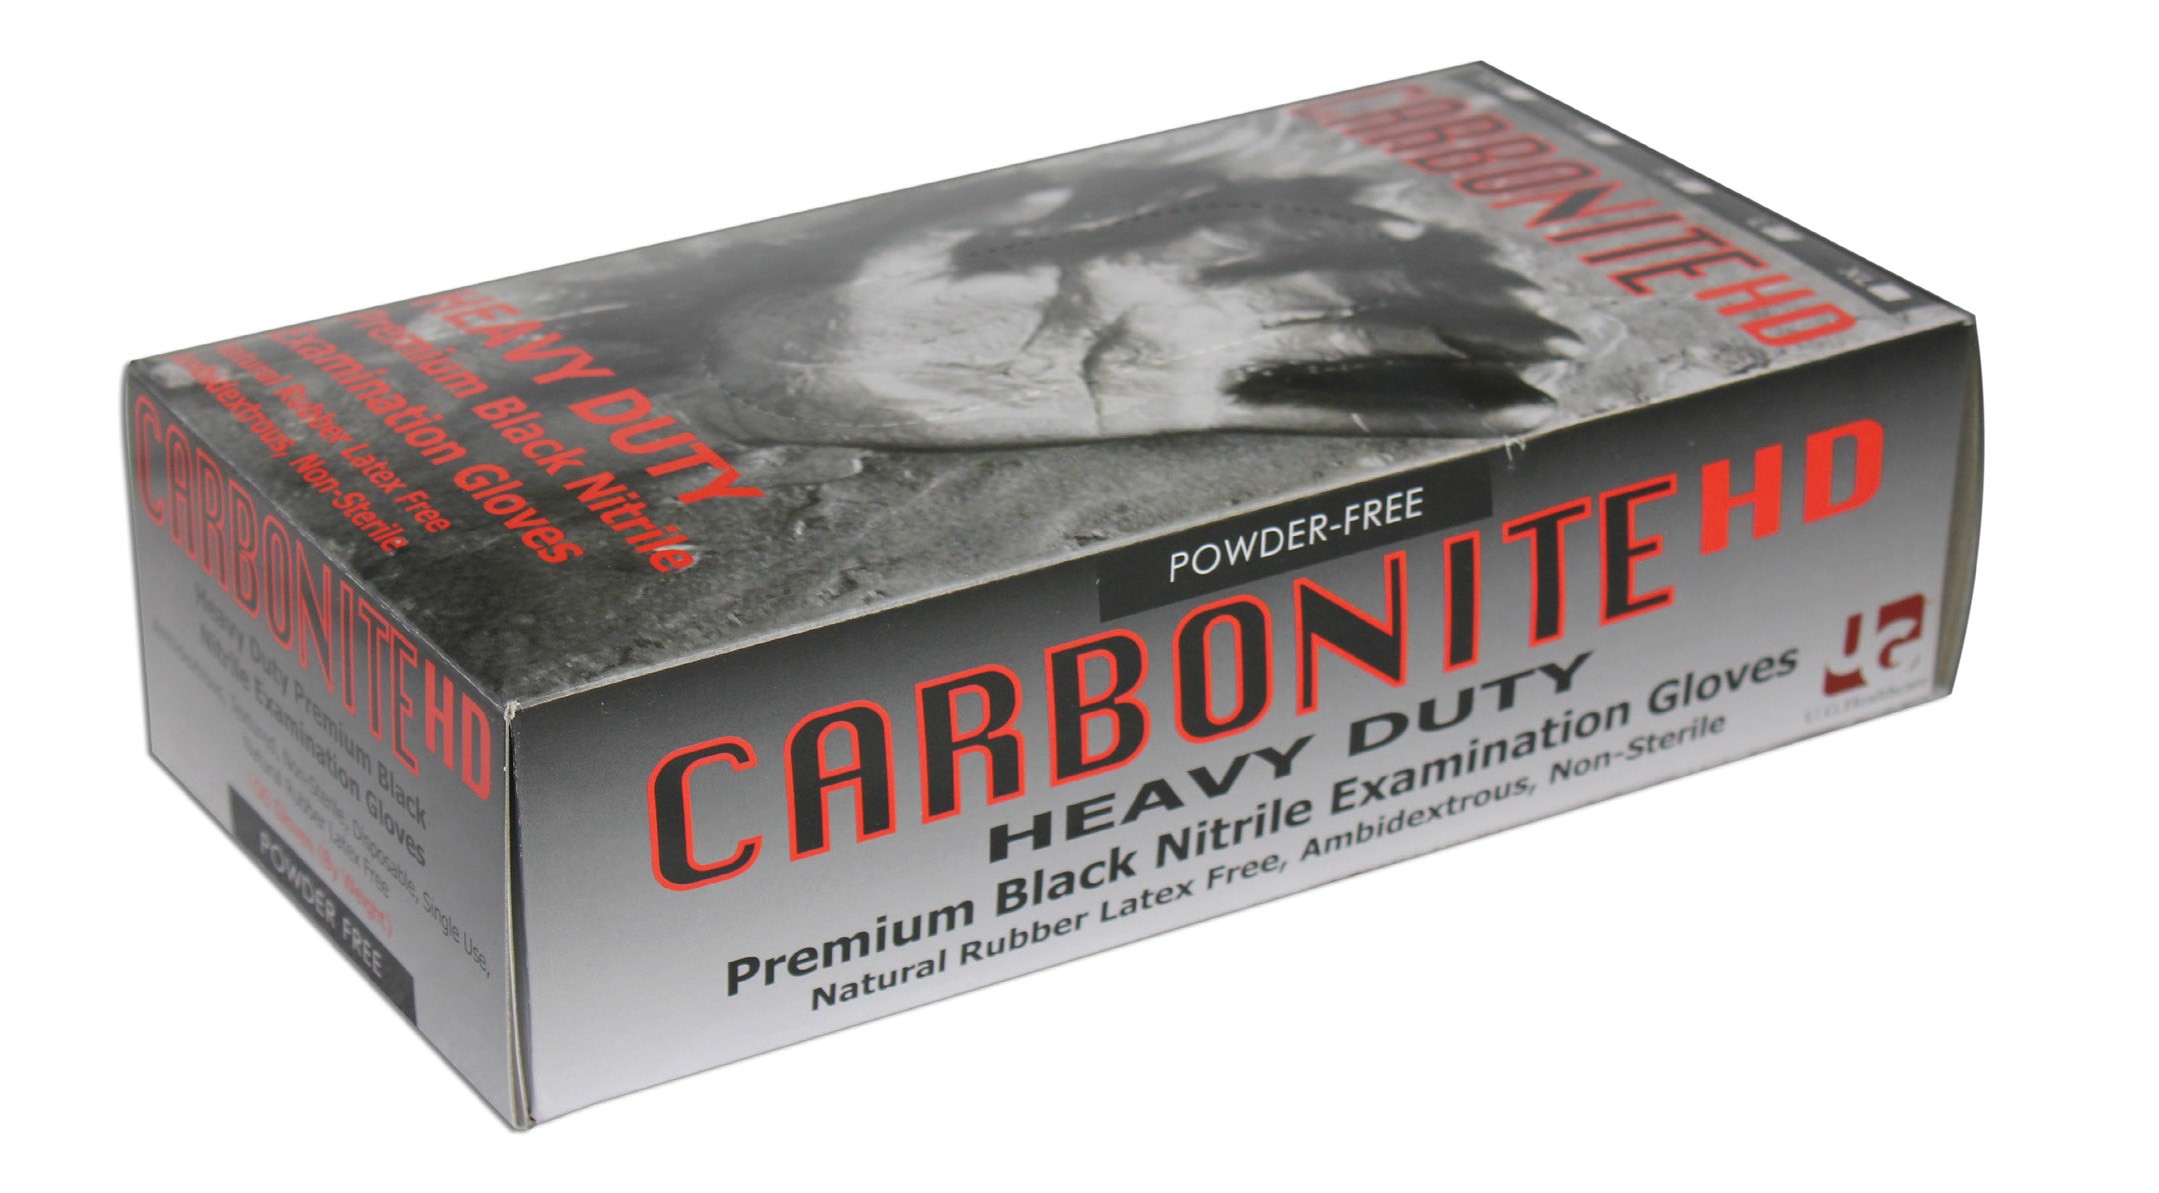 carbonite avast